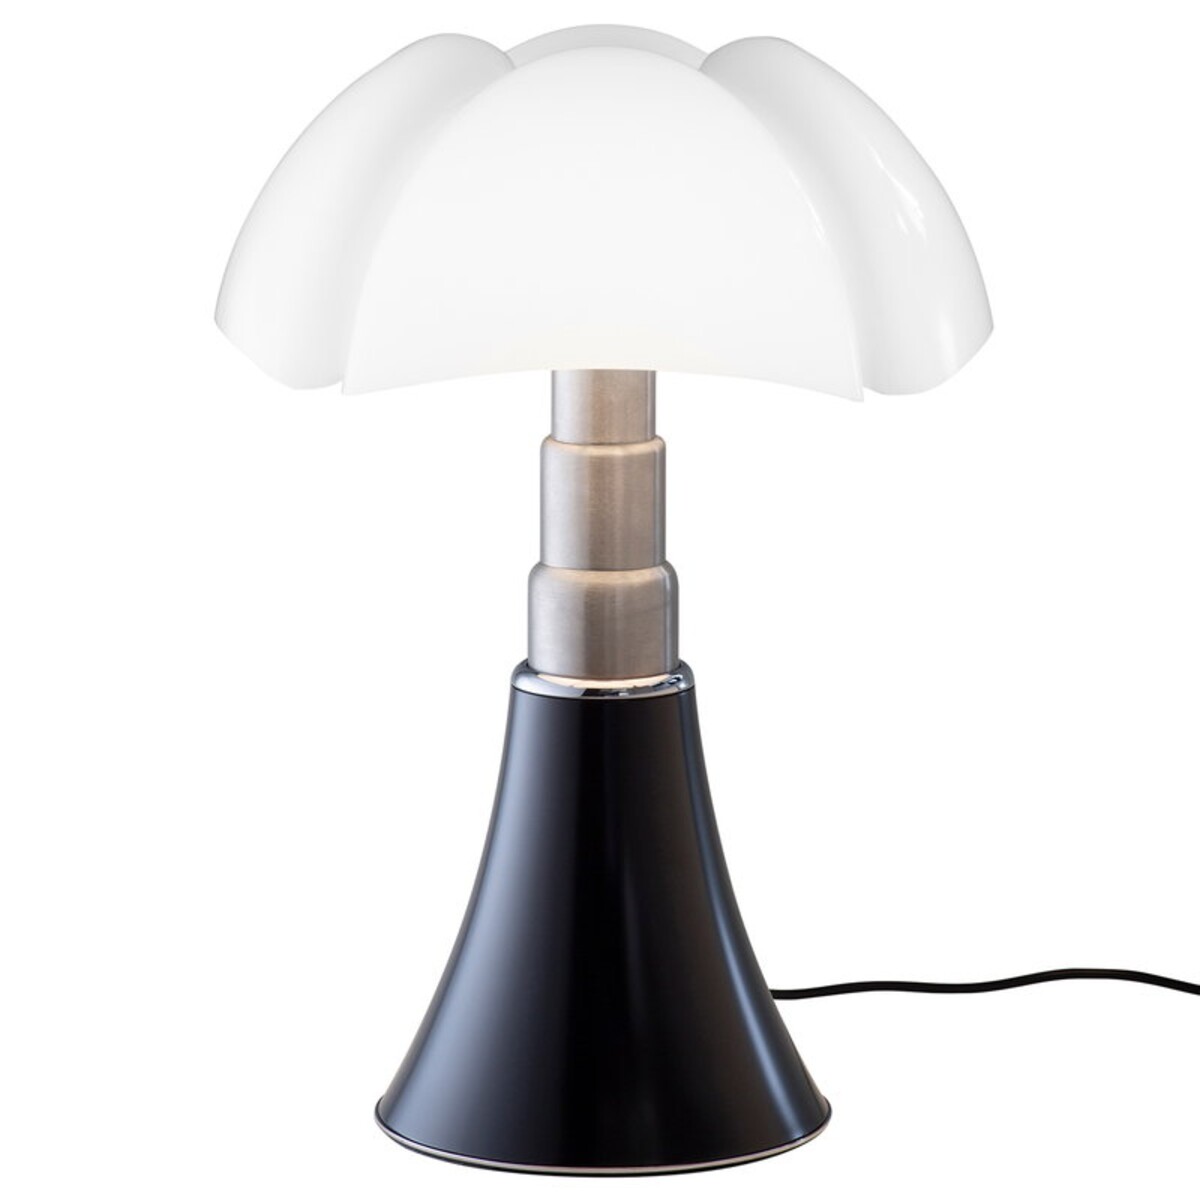 Pipistrello table lamp, black.